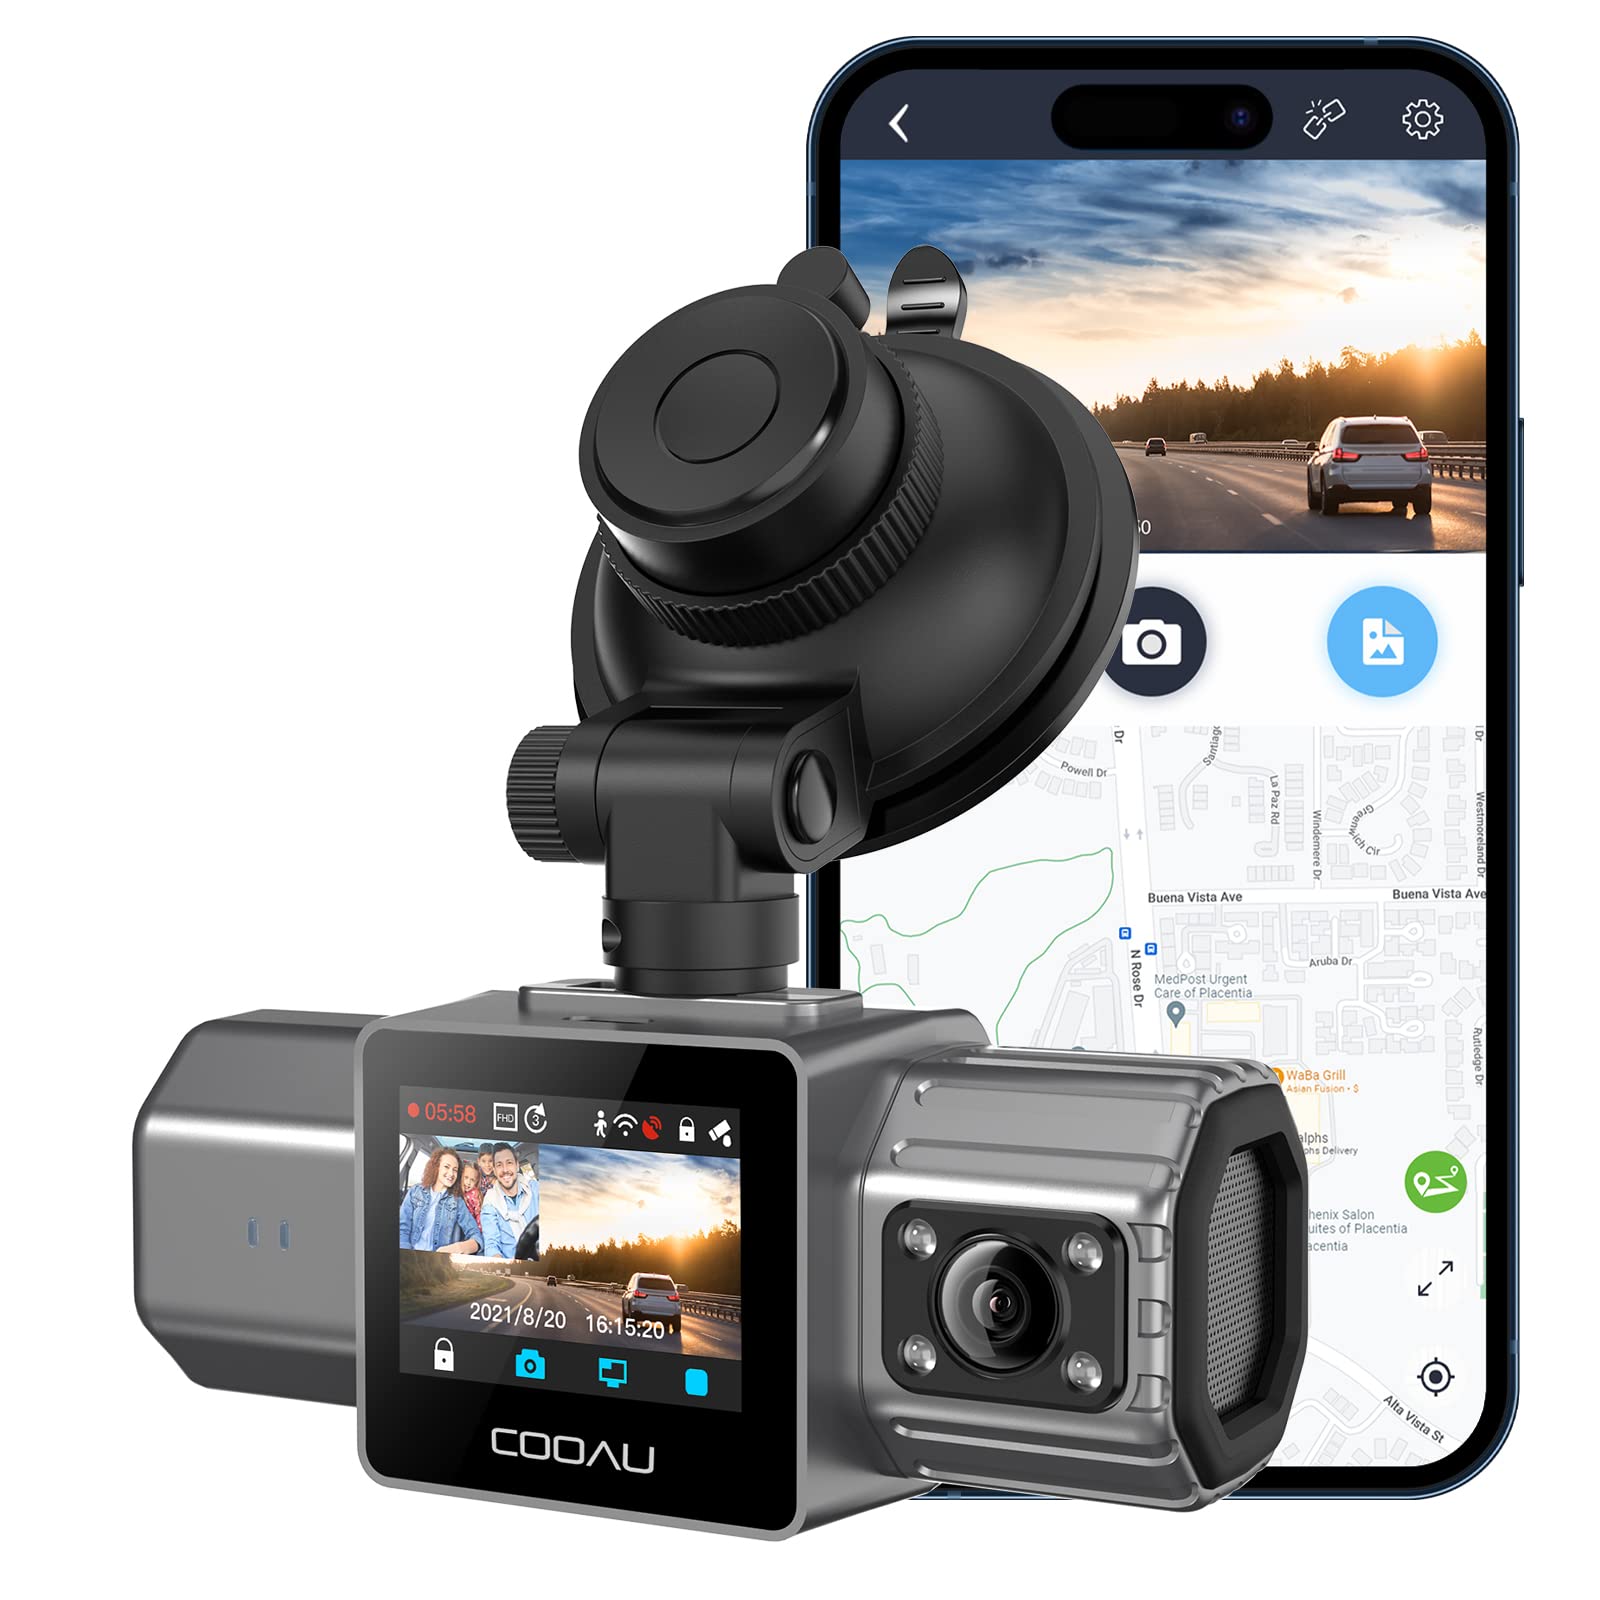  COOAU GPS内蔵デュアルダッシュカム、車用1080Pフロントおよび車内WiFiダッシュカメラ、ソニーセンサー、スーパーキャパシタ、4 IRナイトビジョン、G...